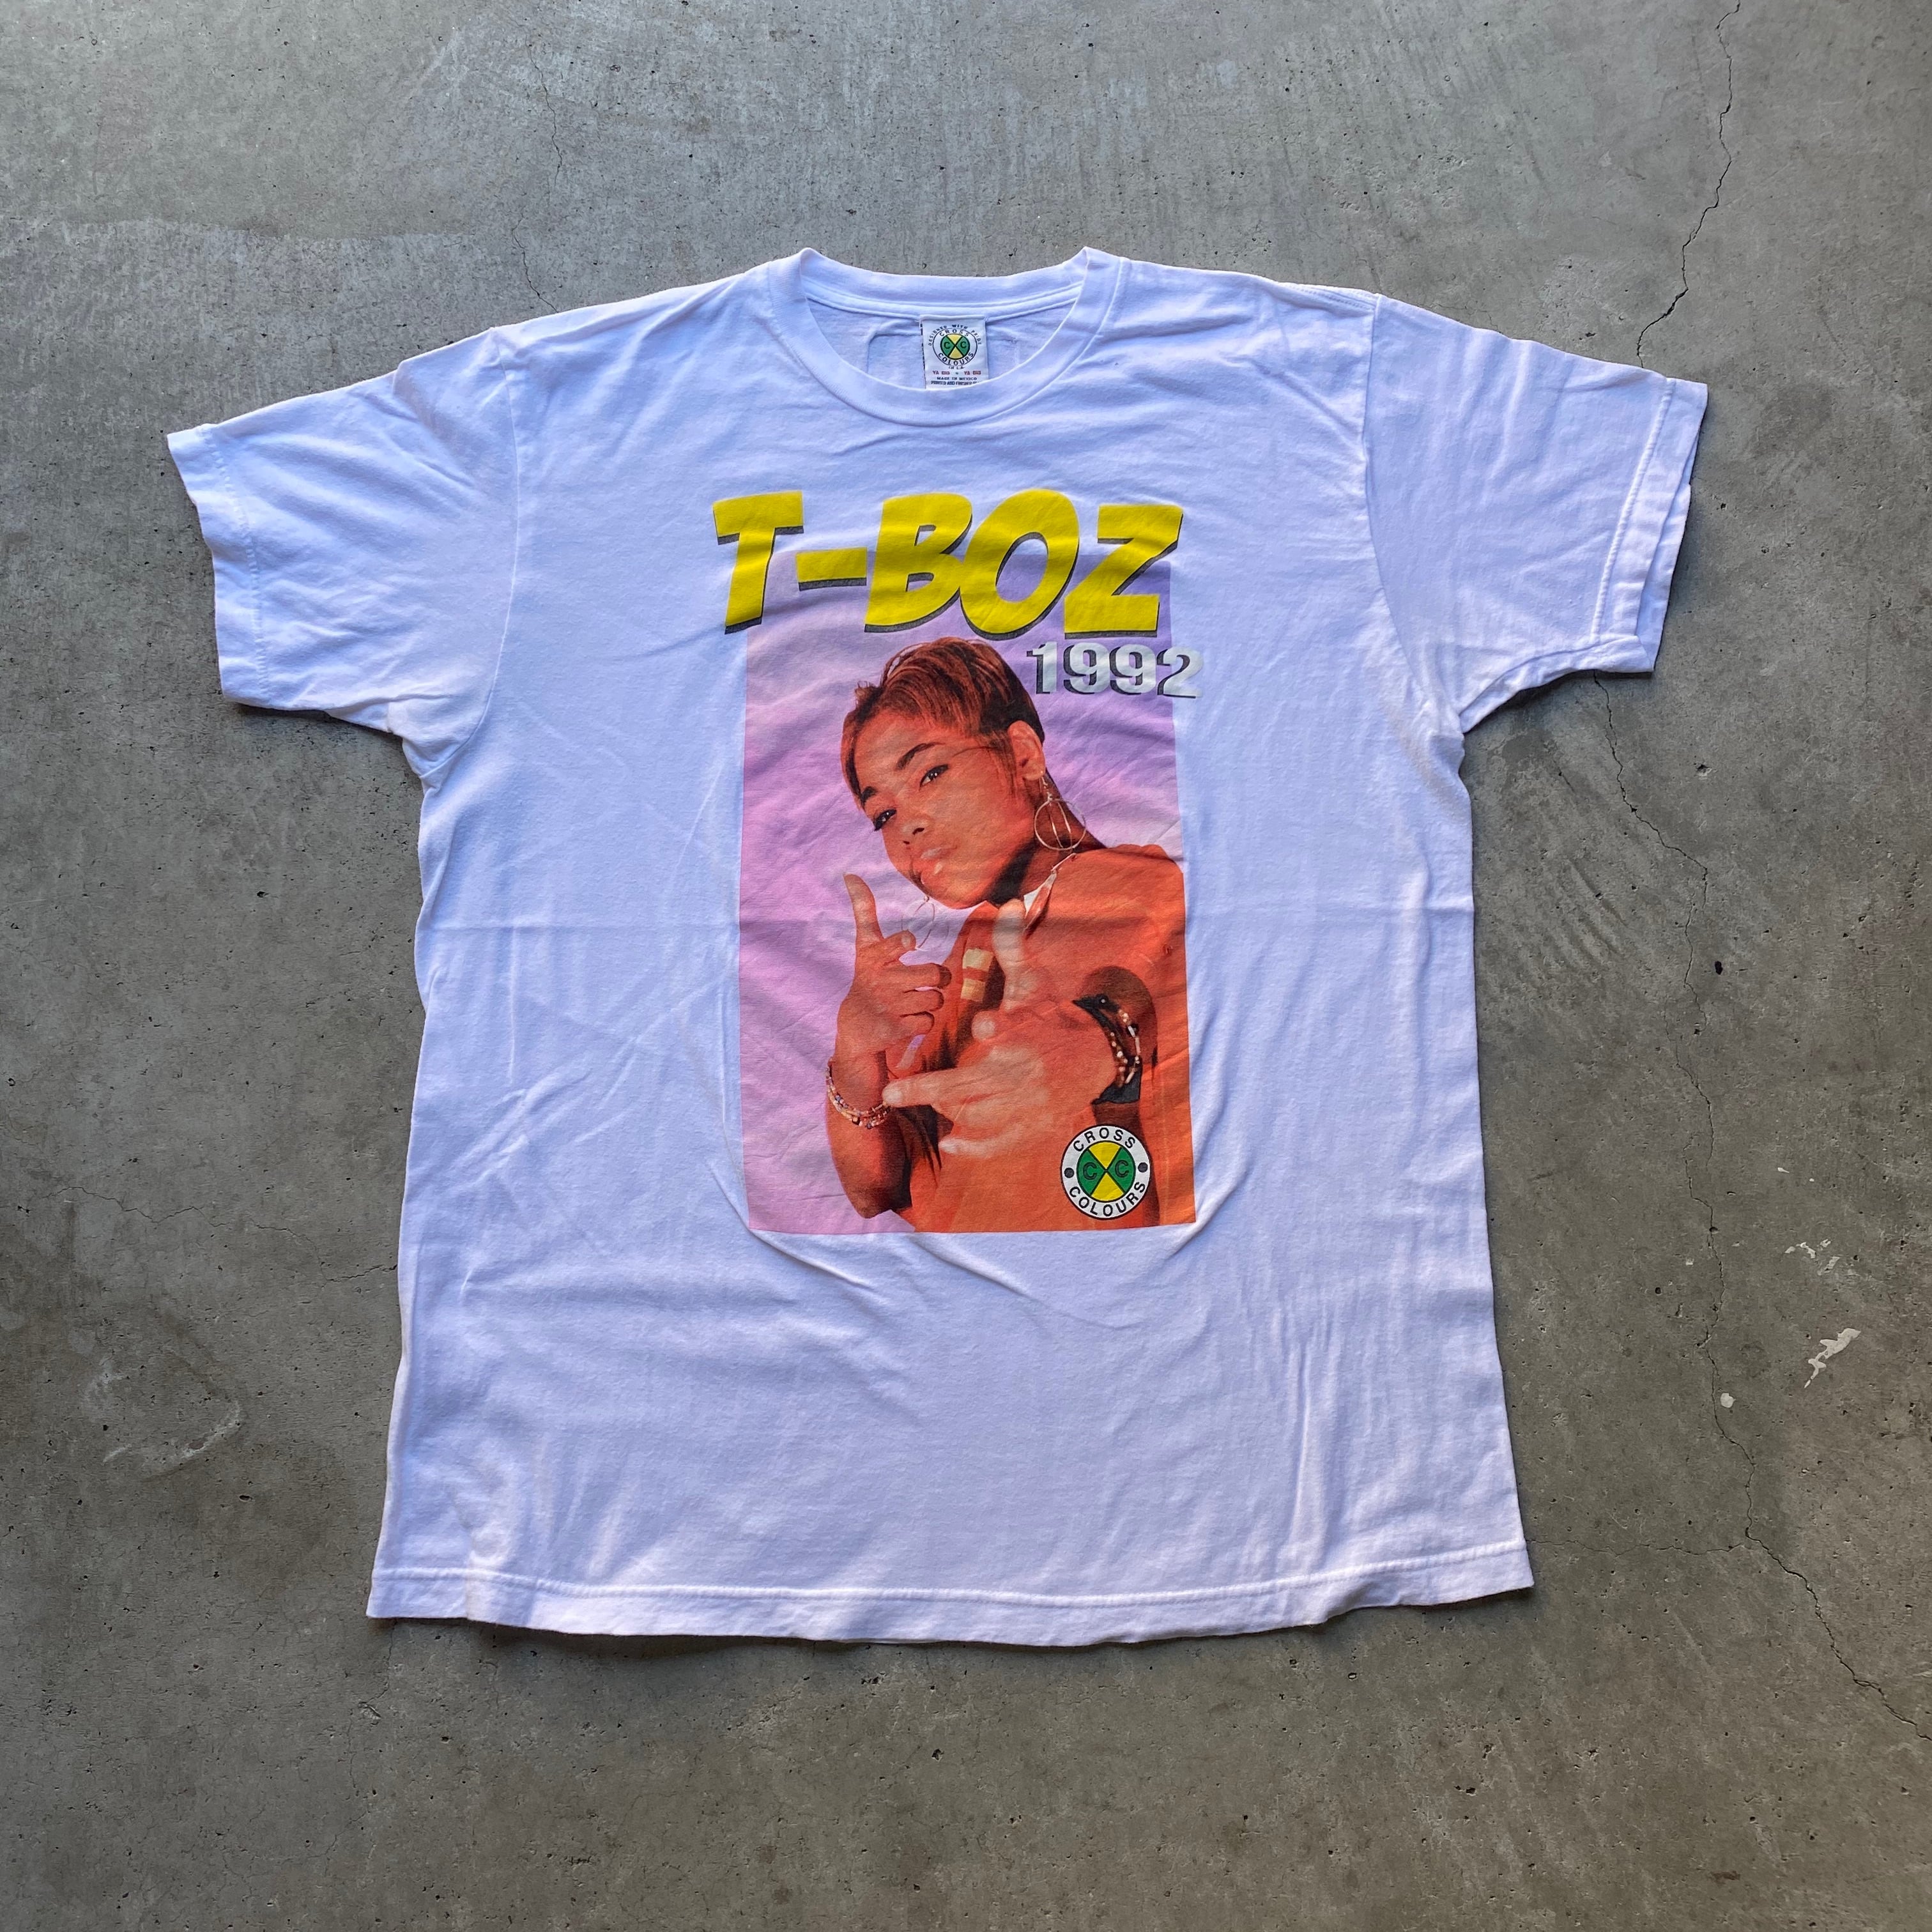 CROSS COLOURS クロスカラーズ T-BOZ Tボス 1992 TLC フォトTシャツ